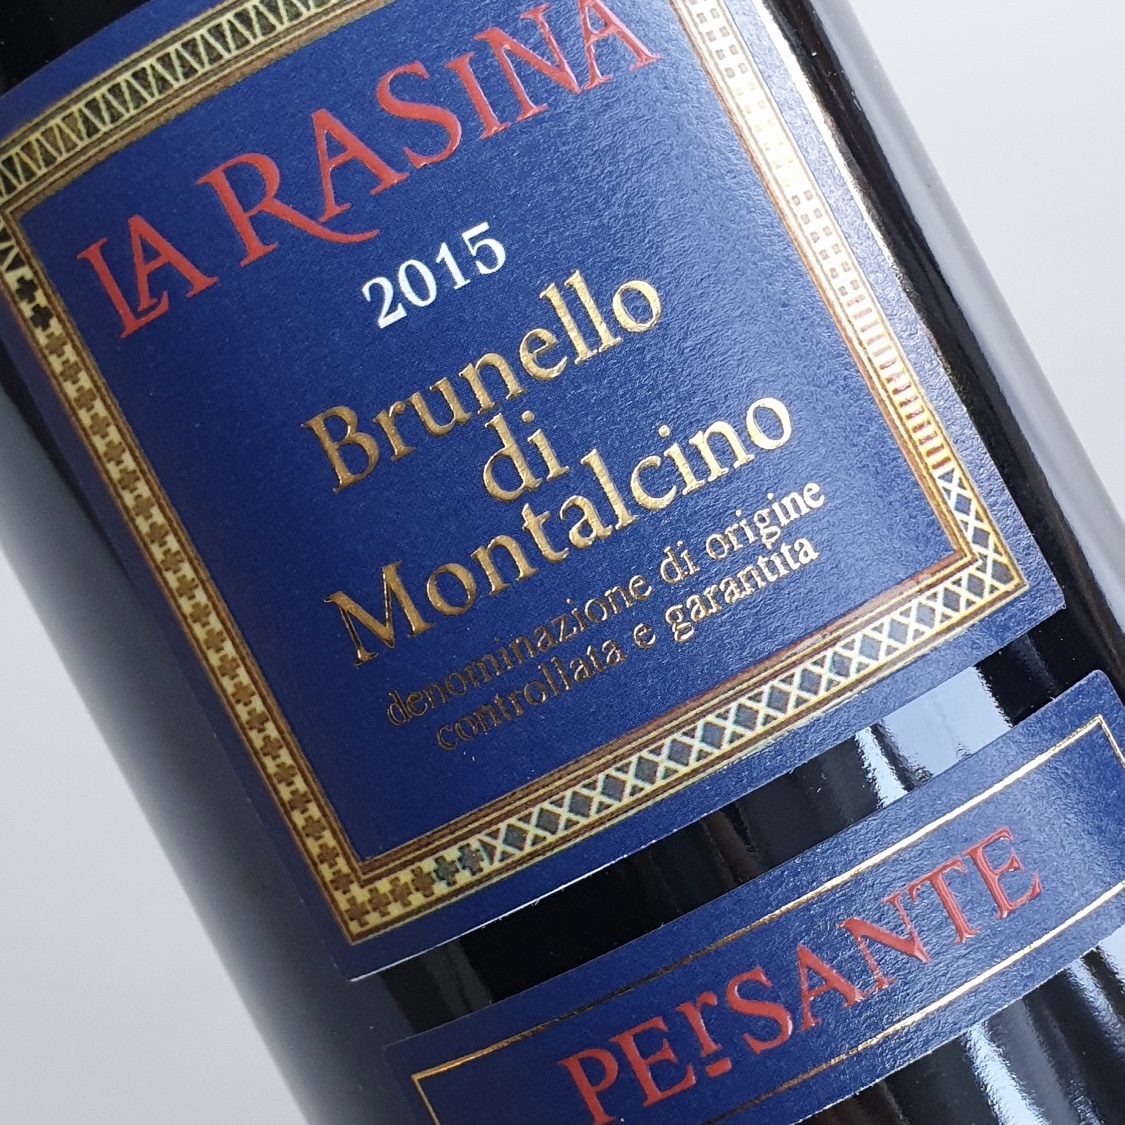 2015 La Rasina Brunello di Montalcino 'Persante' 2. @jay_arbour